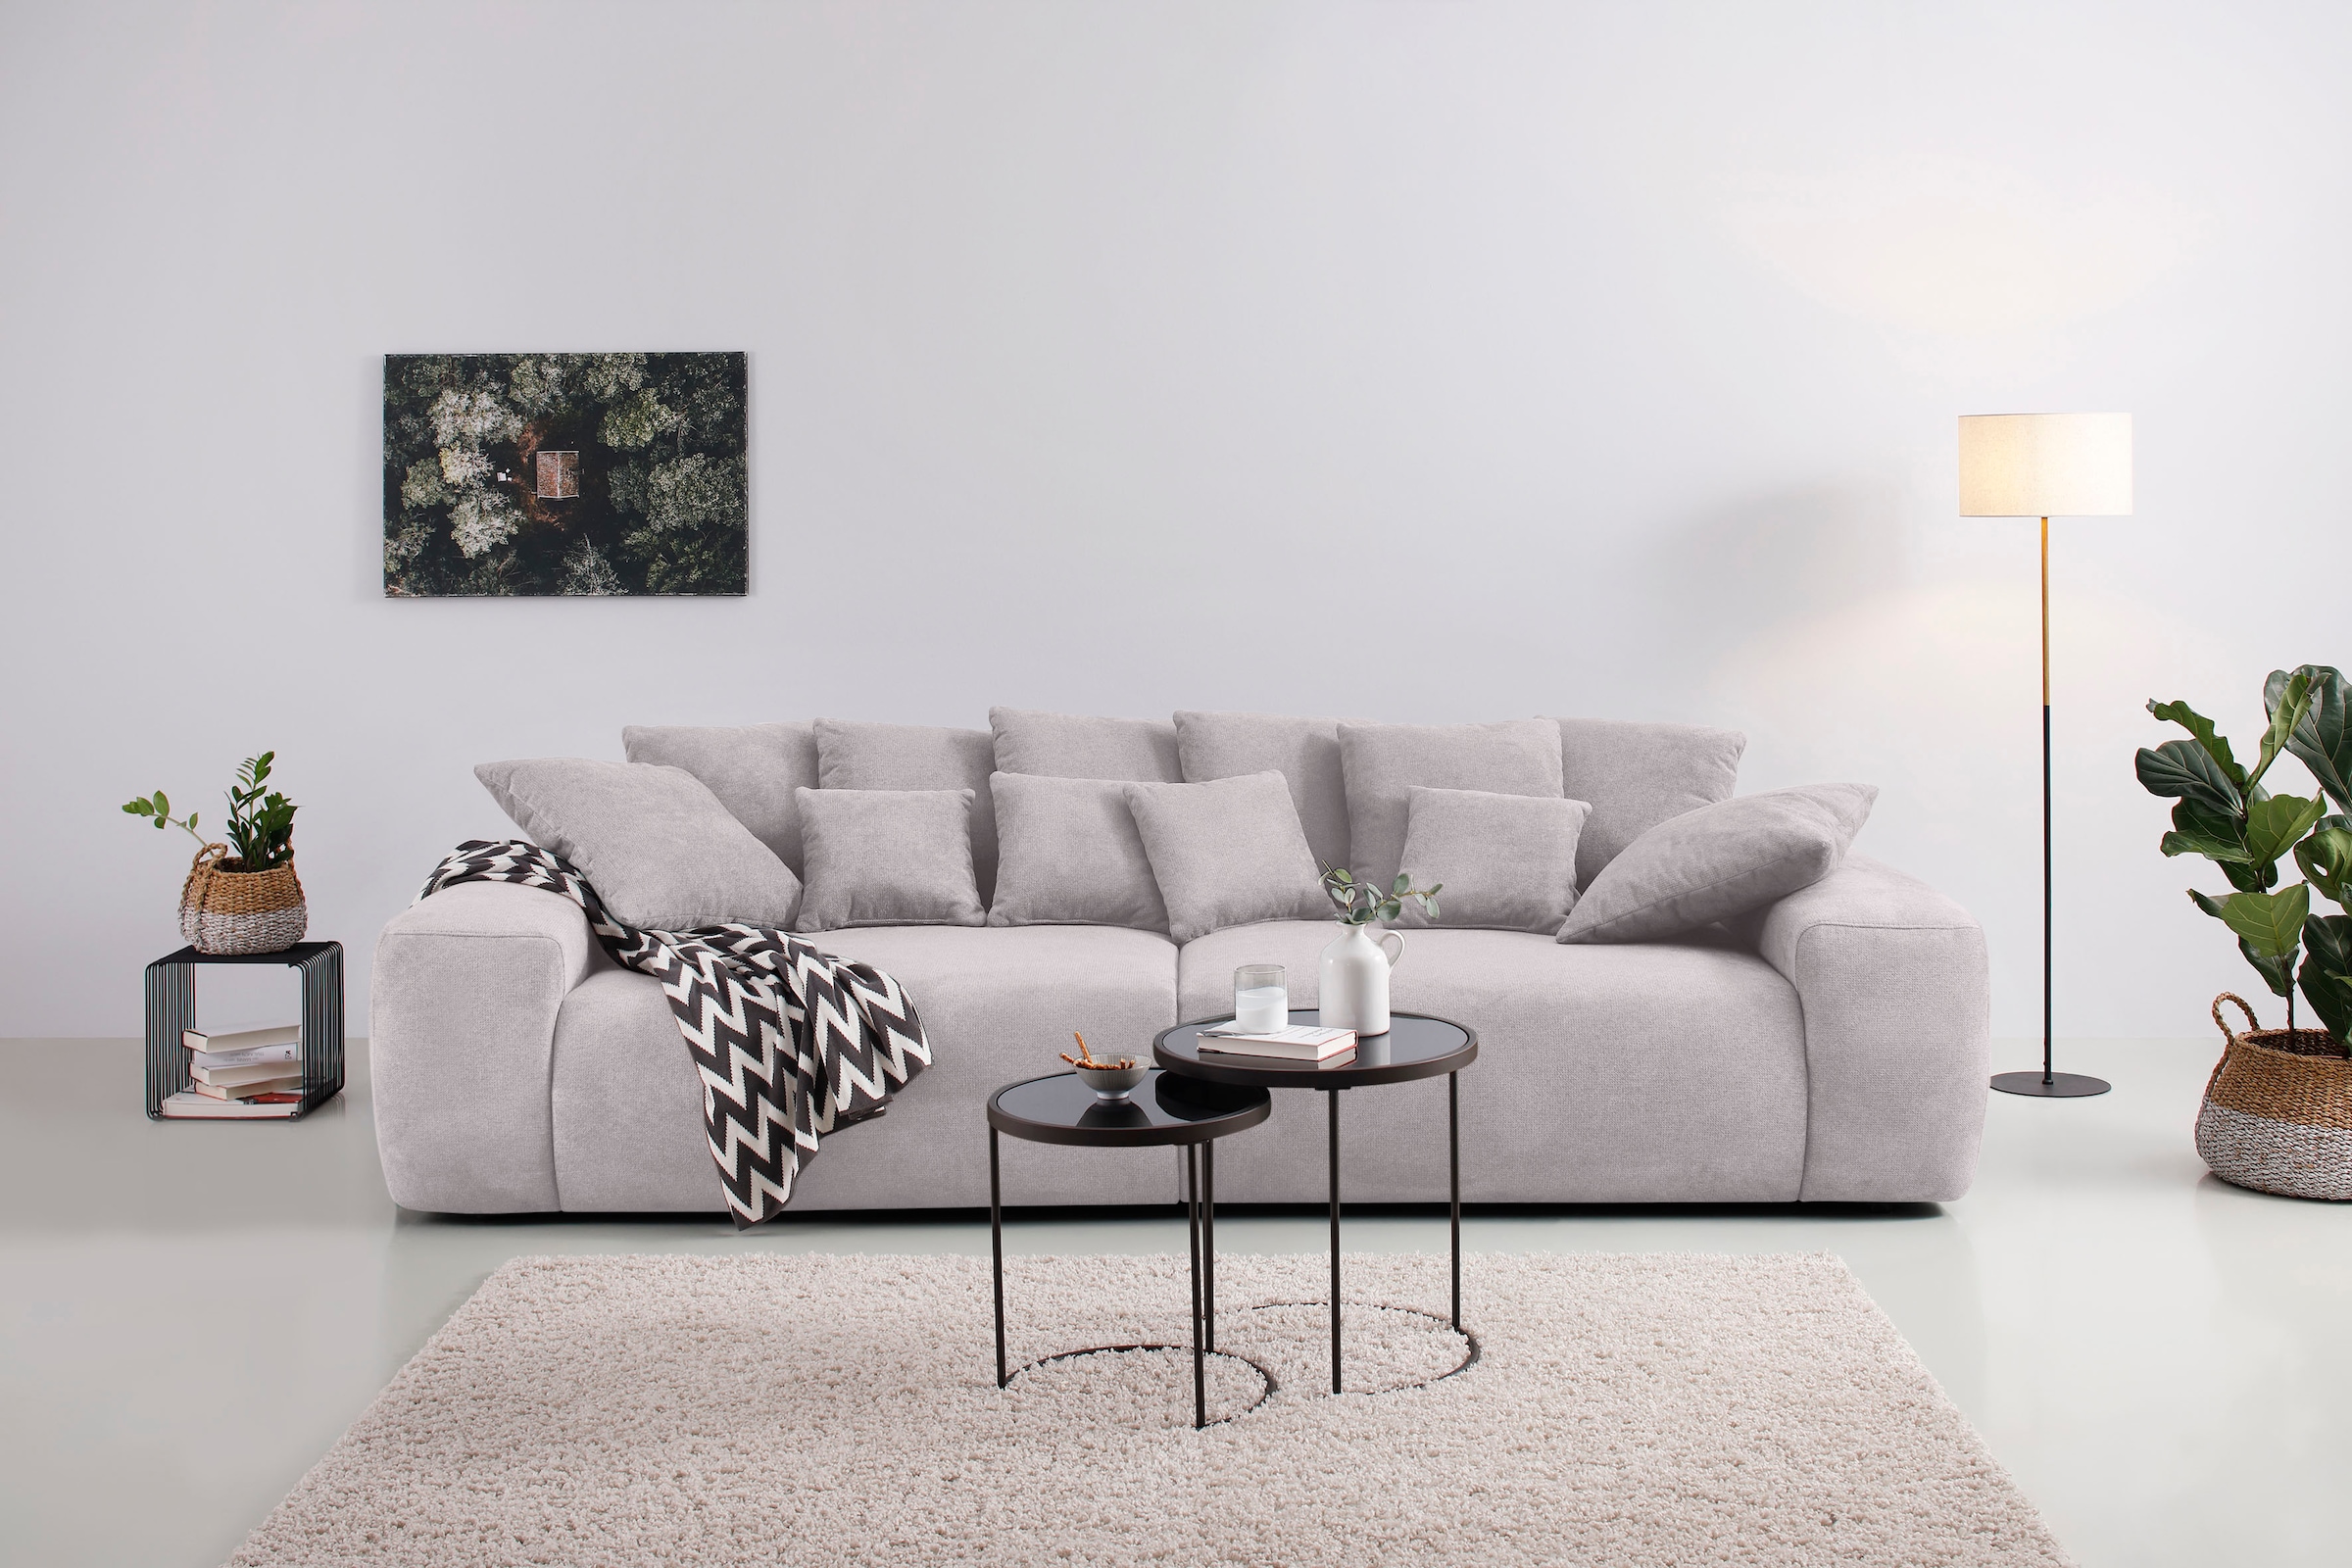 Big-Sofa »Glamour«, Boxspringfederung, Breite 302 cm, Lounge Sofa mit vielen losen Kissen